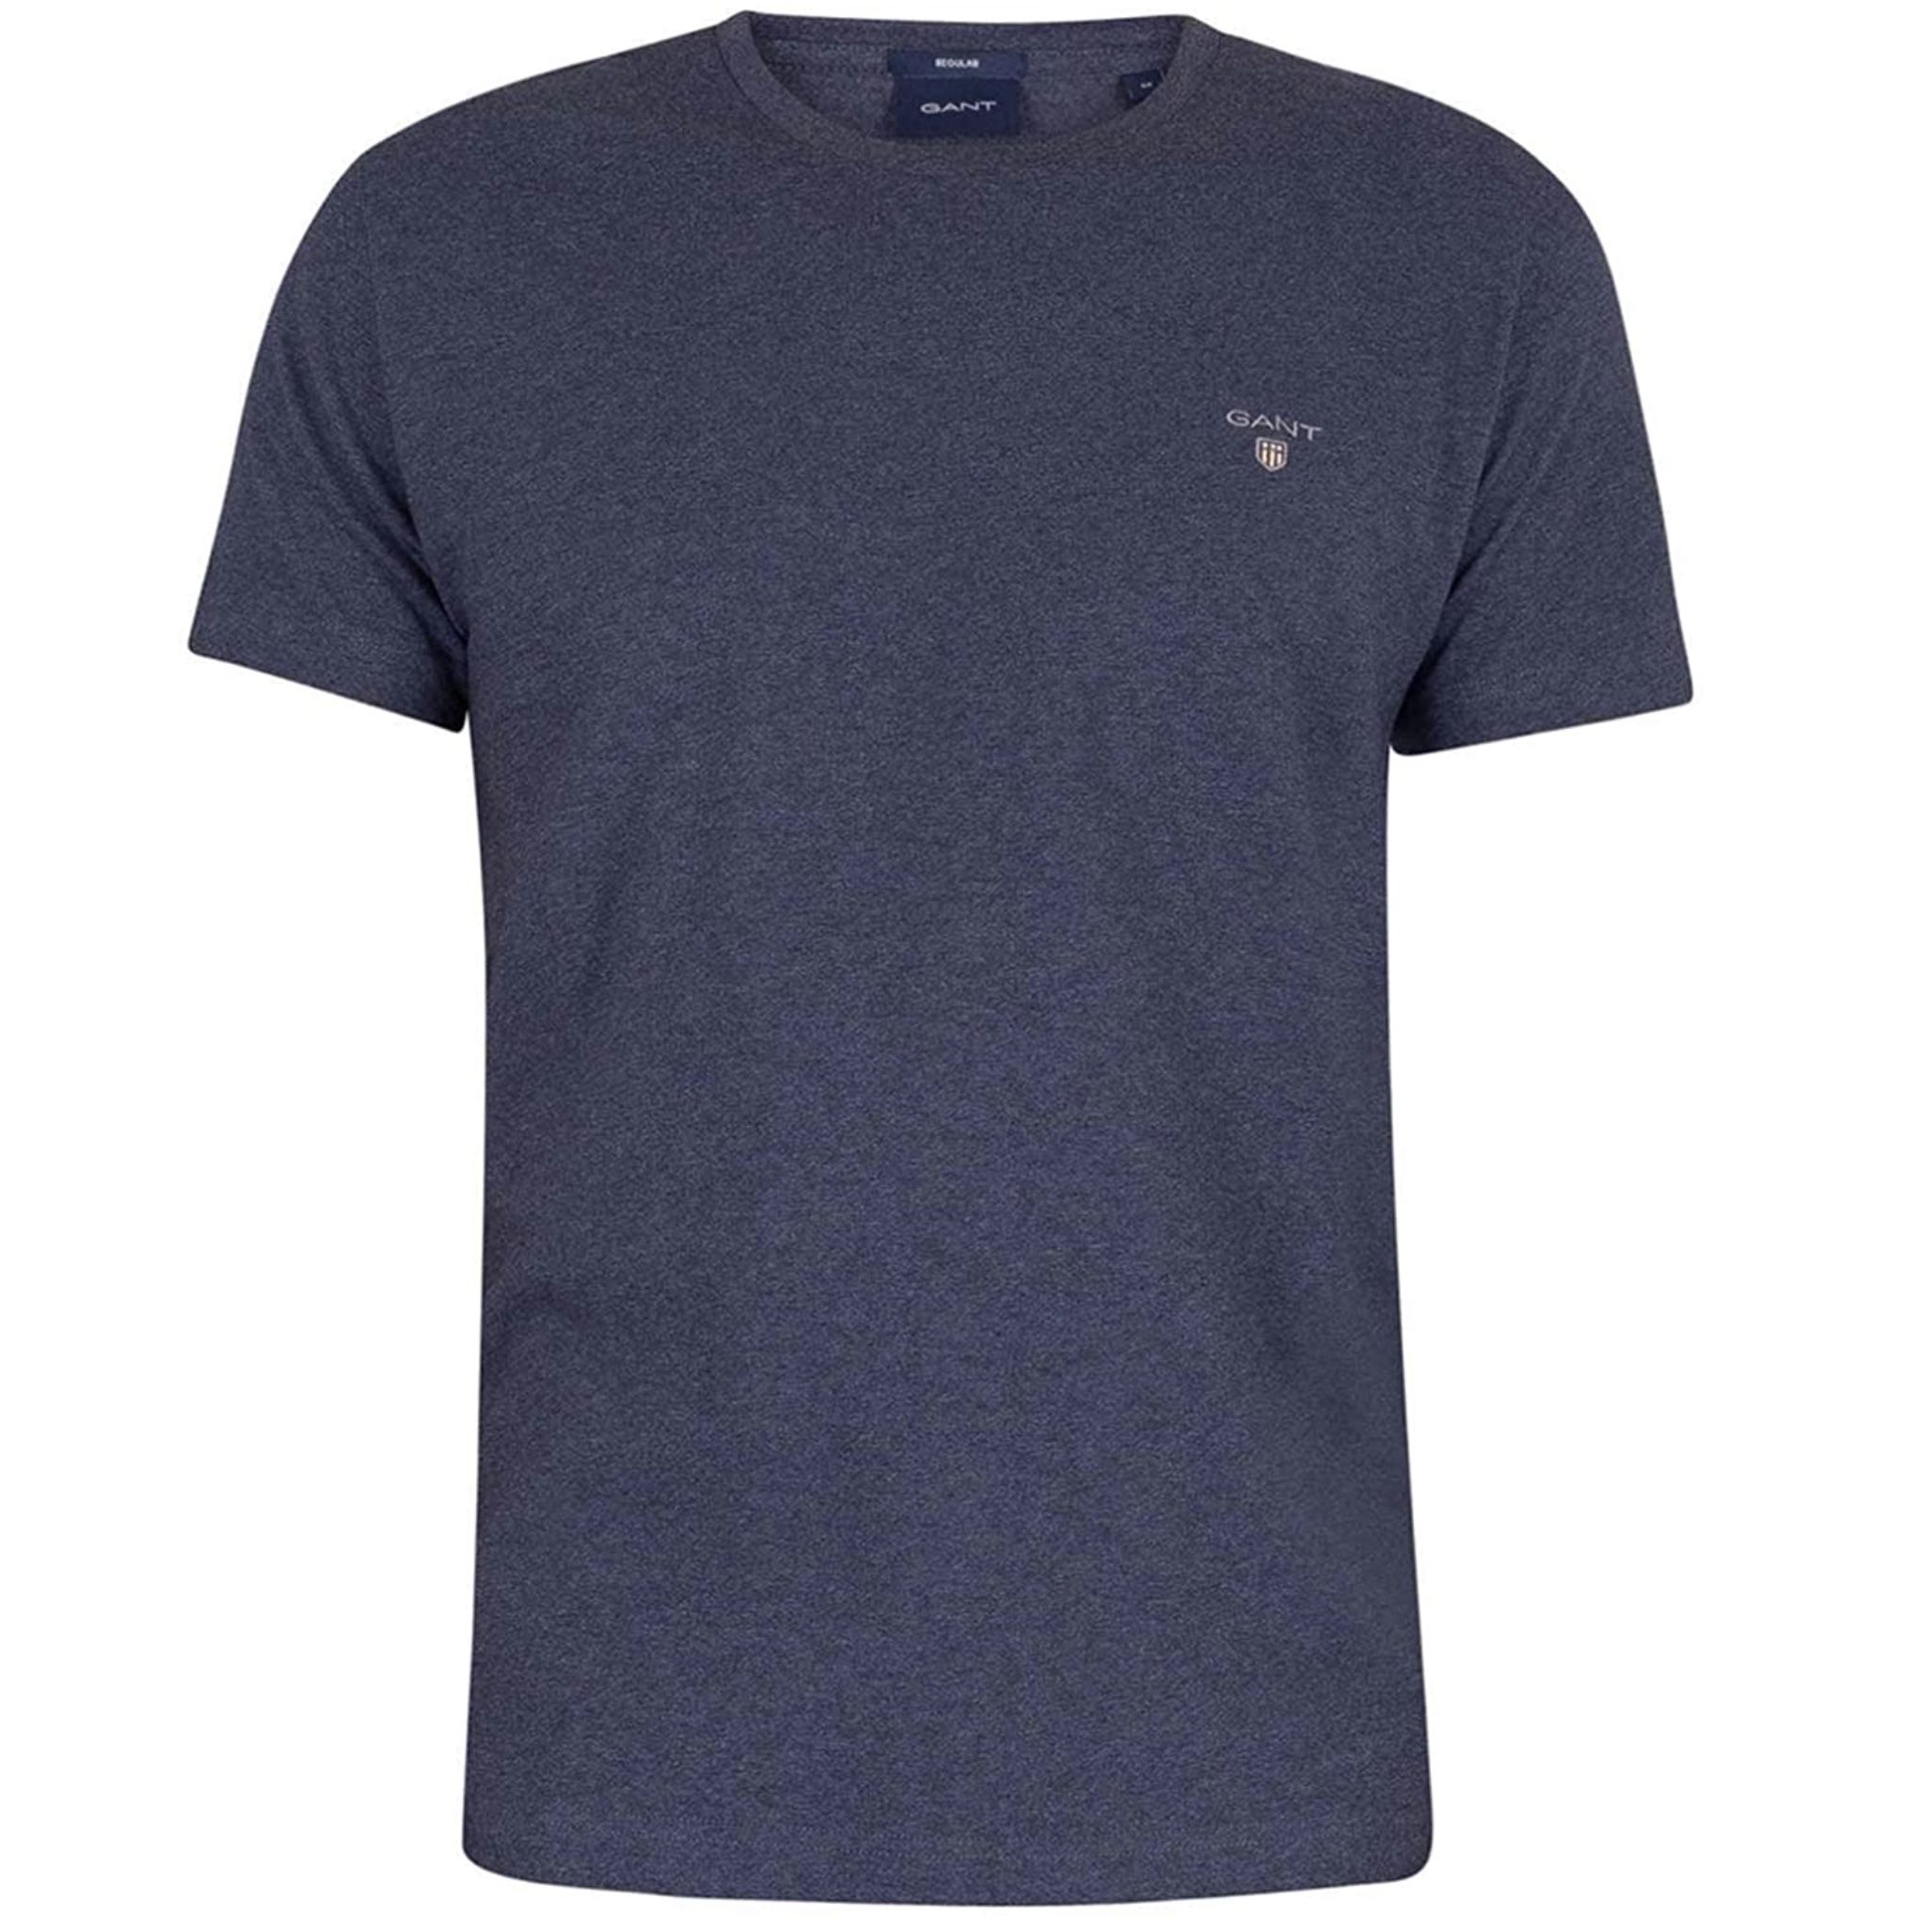 GANT T Shirt mit Logo Stickerei in Regular Fit für 15€ (statt 29€)   Prime